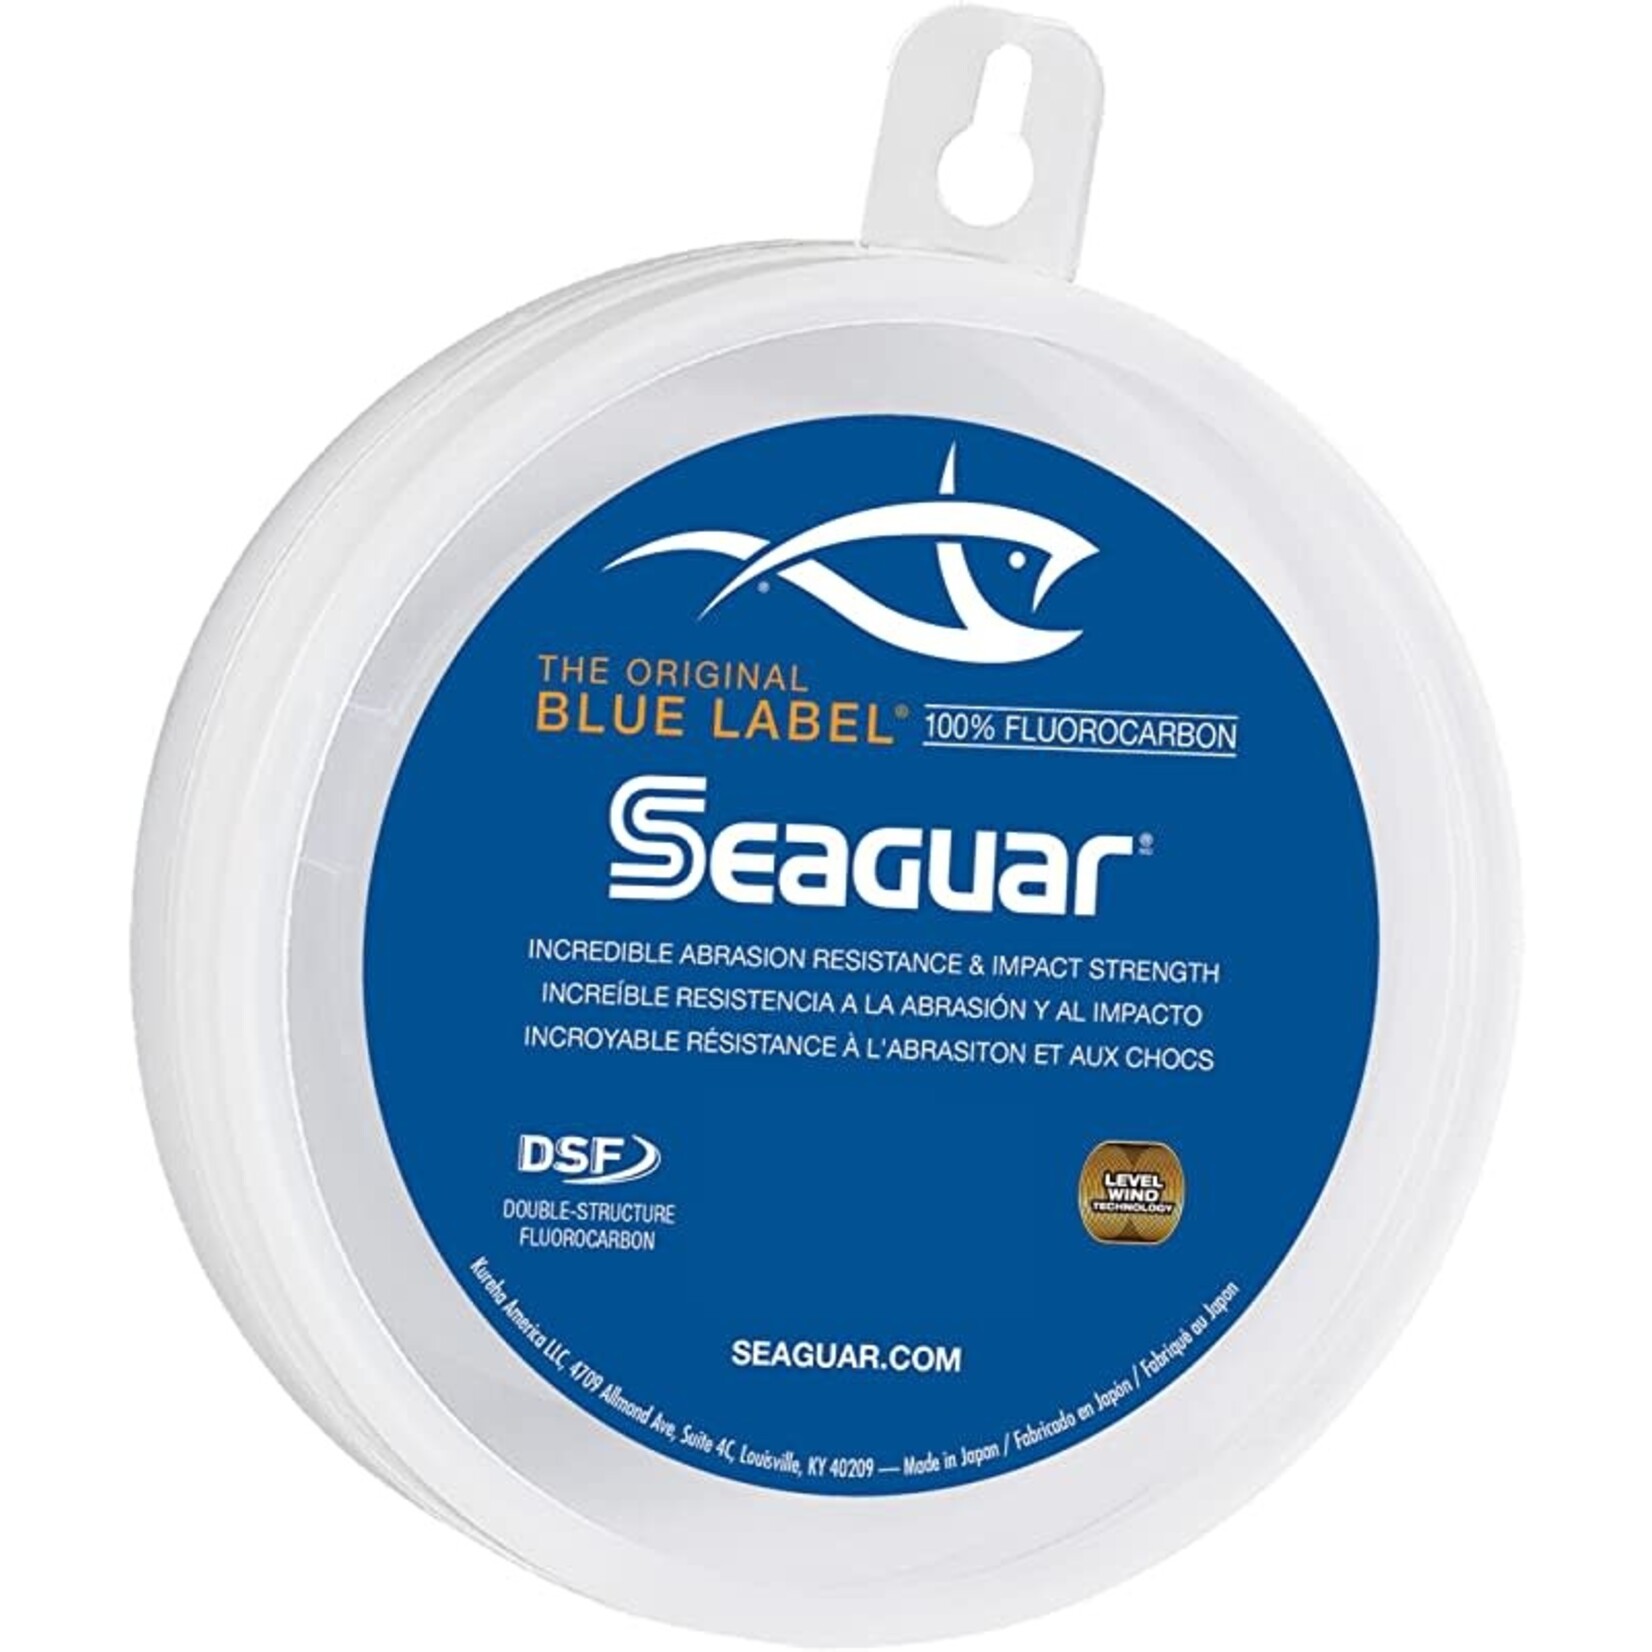 SEAGUAR Fluorocarbon Seaguar Blue Label 10Lb 25 Verges